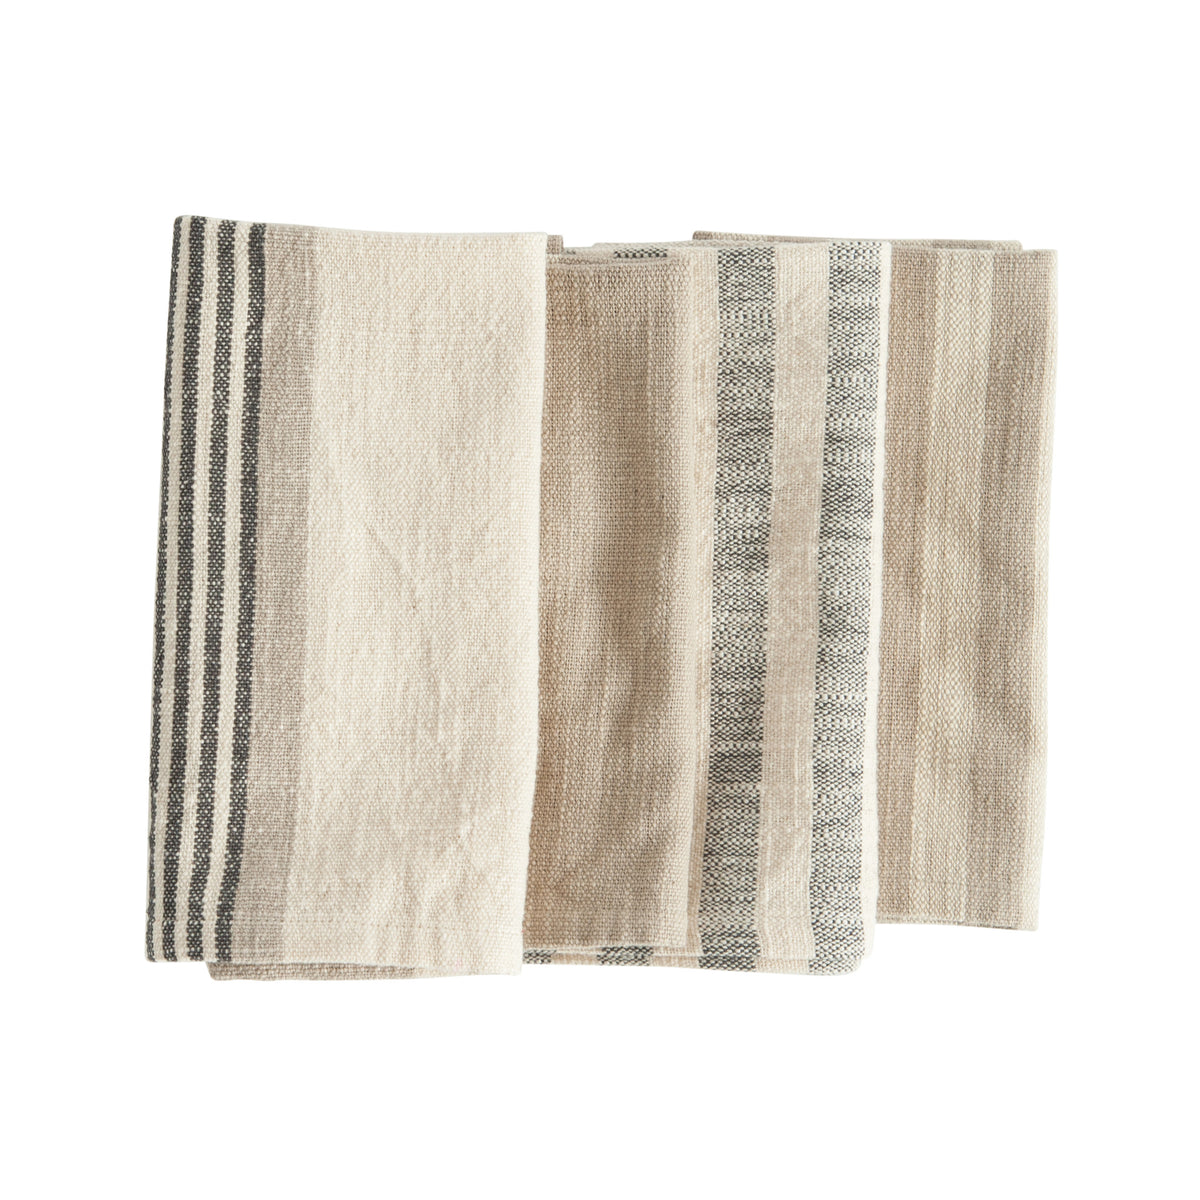 Woven Cotton Striped Napkins, Set of 4